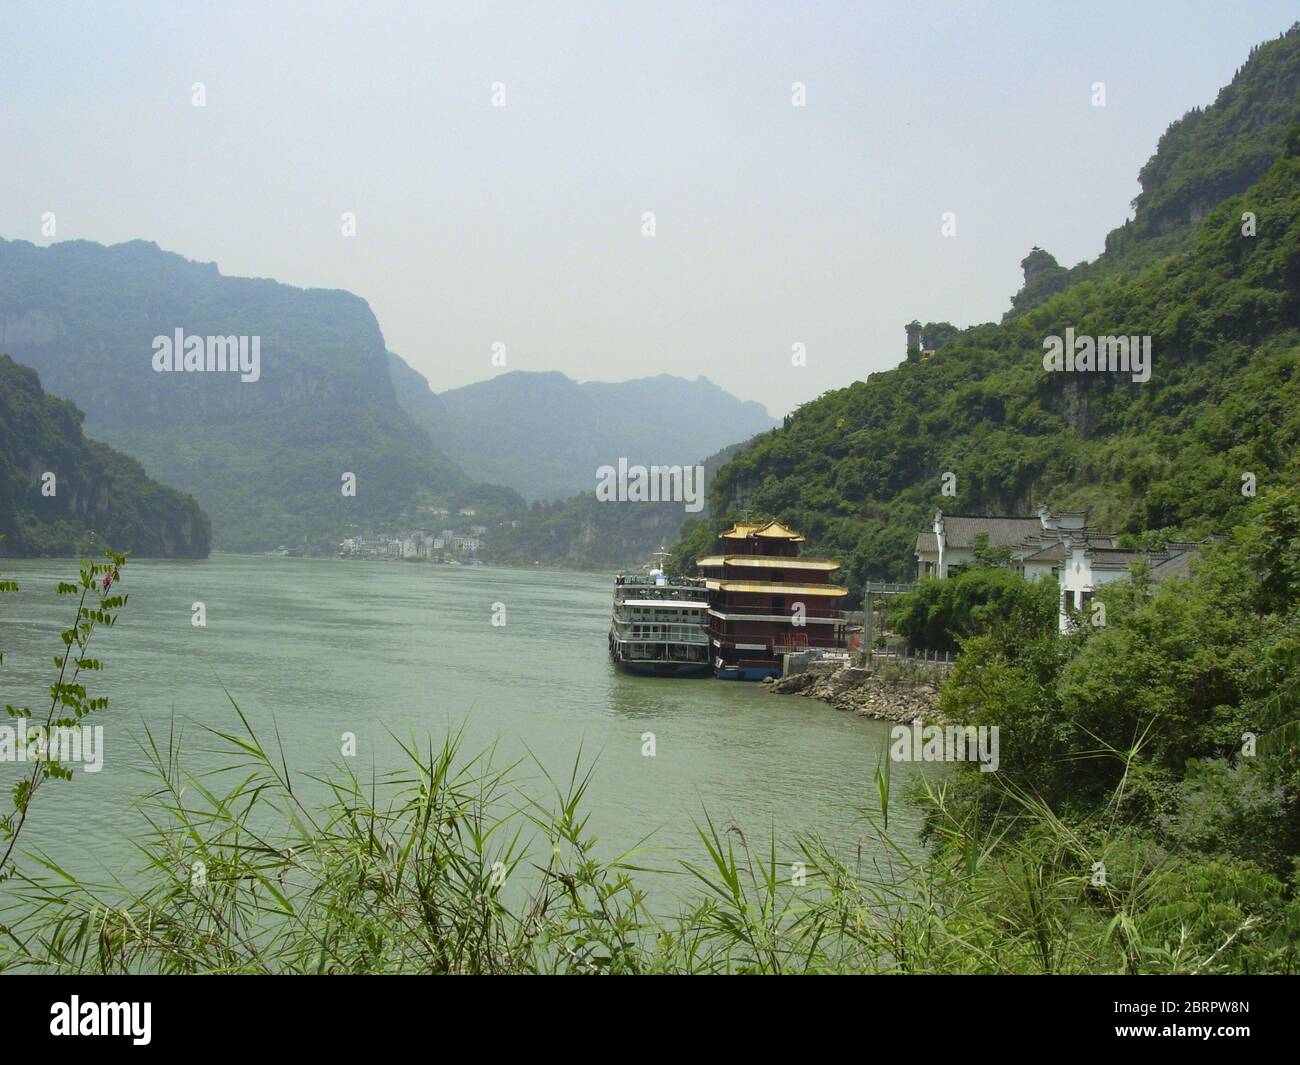 Mayo 22, 2020, Shanxia, Shanxia, China: ChonggingÃ¯Â¼Å'CHINA-las tres gargantas del río Yangtze es famoso por su topografía precipitada, paisaje pintoresco, momento magnífico y numerosos lugares escénicos y sitios históricos. Es una atracción turística mundialmente famosa y un punto caliente de turismo en China. Las tres gargantas son el nombre general de la garganta de qutang, la garganta de wuxia y la garganta de xiling. Comienza en baidicheng en el condado de fengjie, ciudad de chongqing en el oeste, y termina en nanjinguan en la ciudad de yichang, provincia de hubei en el este. Abarca cinco condados y ciudades incluyendo fengjie, wushan, badong, Foto de stock